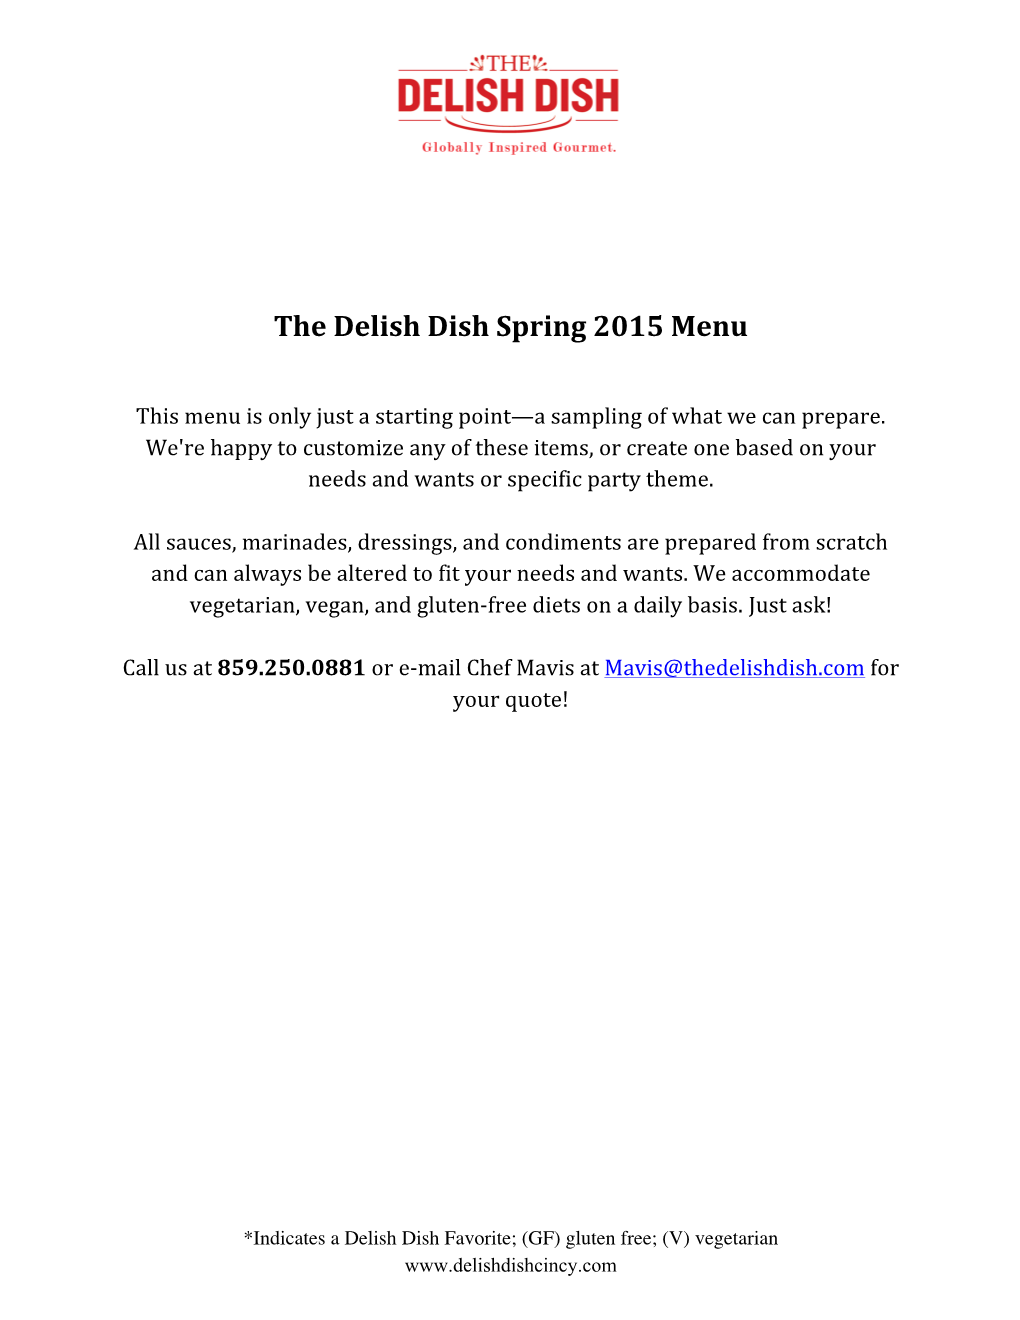 The Delish Dish Spring 2015 Menu